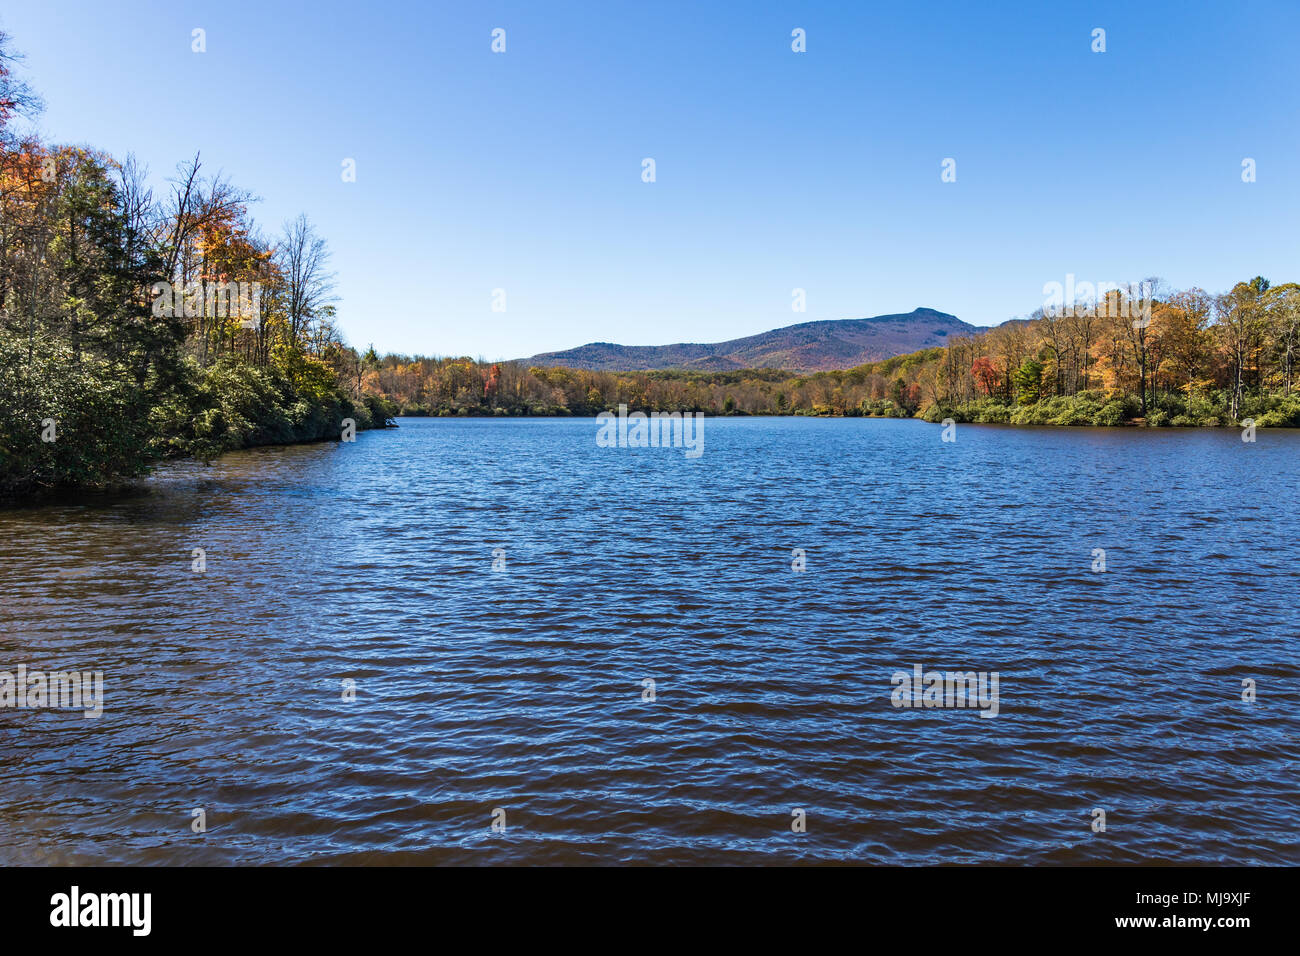 Herbst auf einem ruhigen Bergsee von Herbst Farbe und blauer Himmel umgeben, und ein Bergrücken in der Ferne. Stockfoto